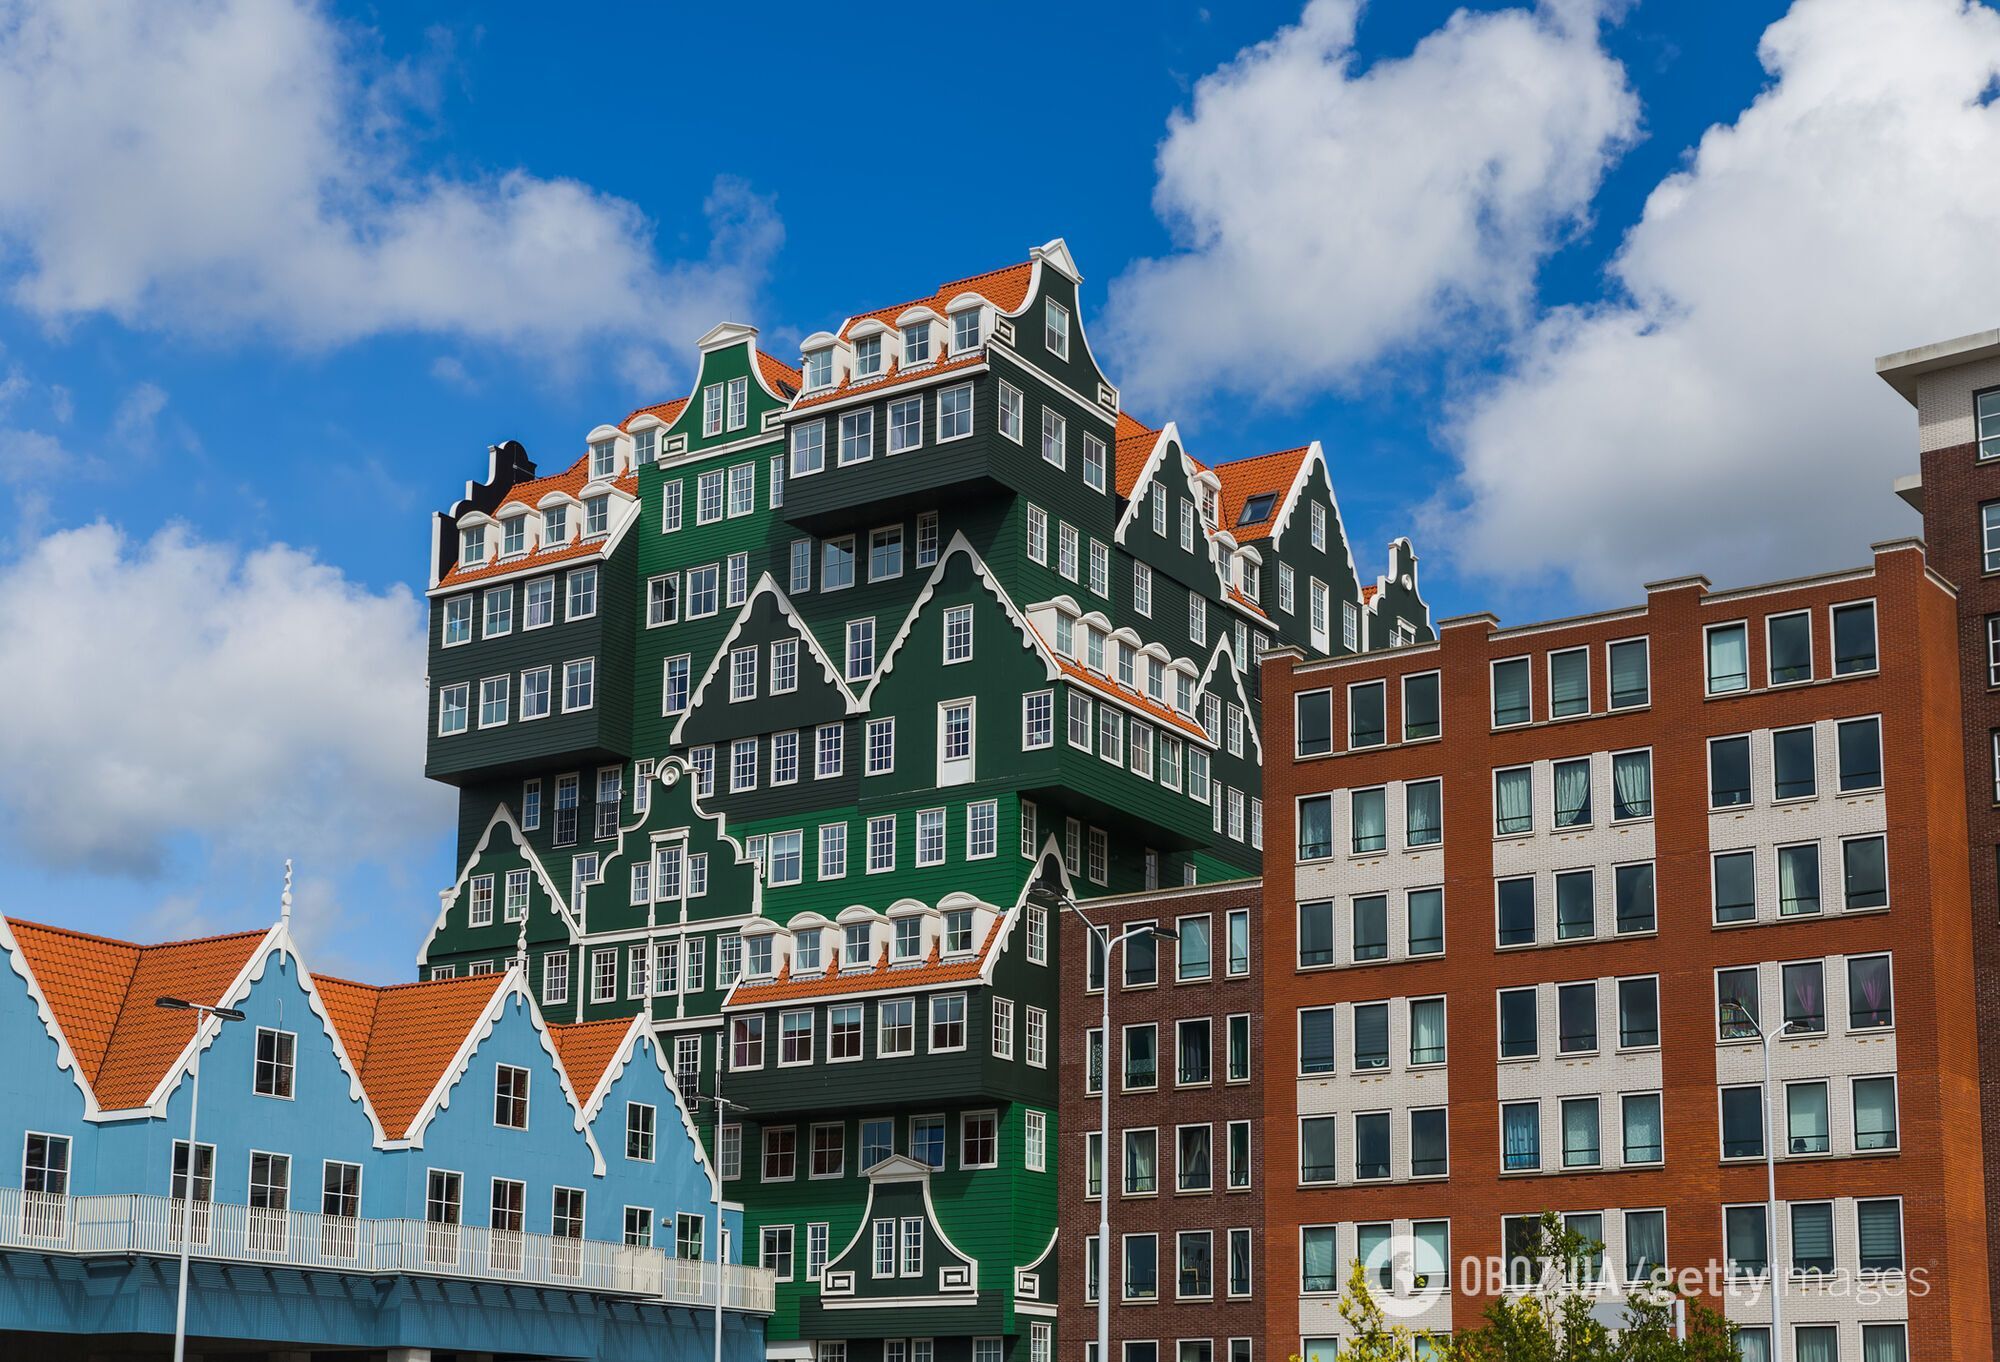 Схоже на конструктор Lego. Який вигляд має незвичайне місто в Європі, яке називають дешевою альтернативою Амстердаму